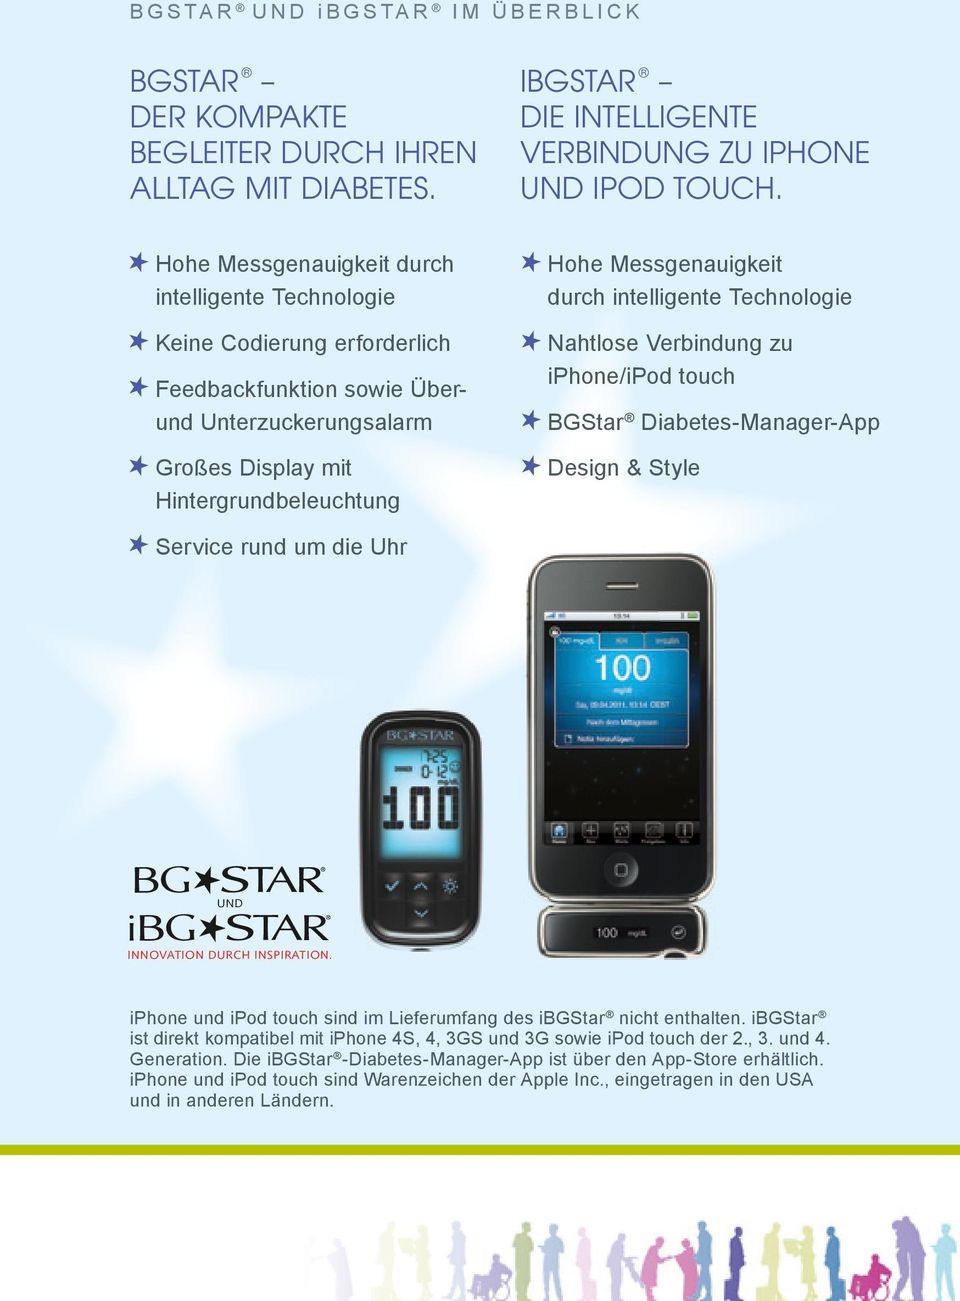 Überund Unterzuckerungsalarm Großes Display mit Hintergrundbeleuchtung BGStar Diabetes-Manager-App Design & Style Service rund um die Uhr NEU UND INNOVATION DURCH INSPIRATION.